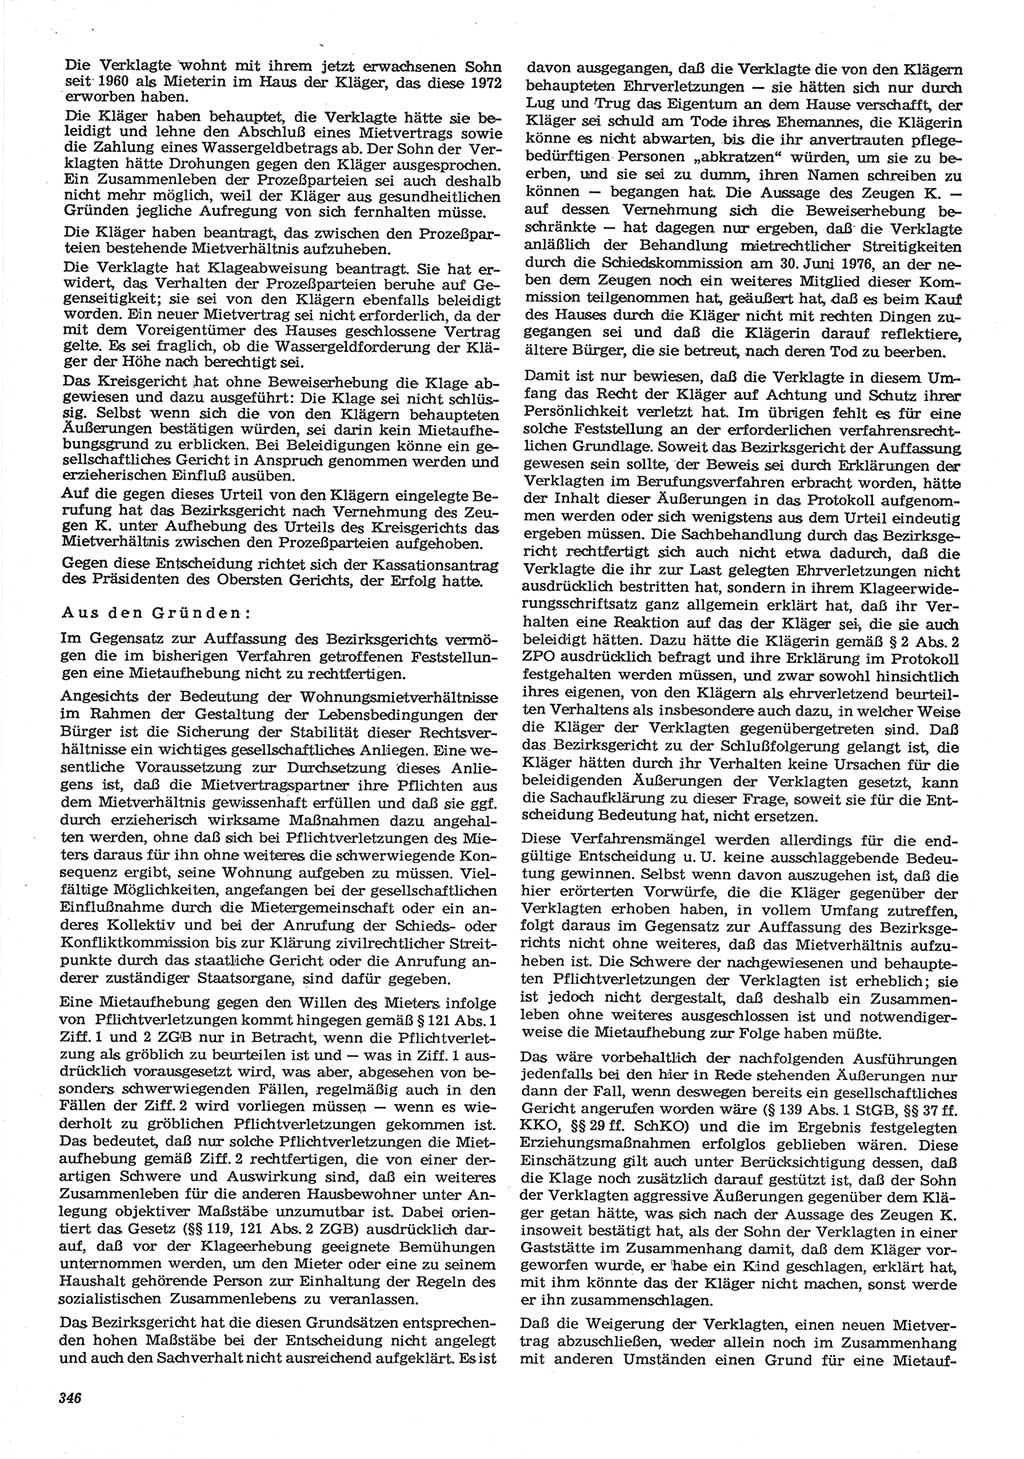 Neue Justiz (NJ), Zeitschrift für Recht und Rechtswissenschaft-Zeitschrift, sozialistisches Recht und Gesetzlichkeit, 31. Jahrgang 1977, Seite 346 (NJ DDR 1977, S. 346)